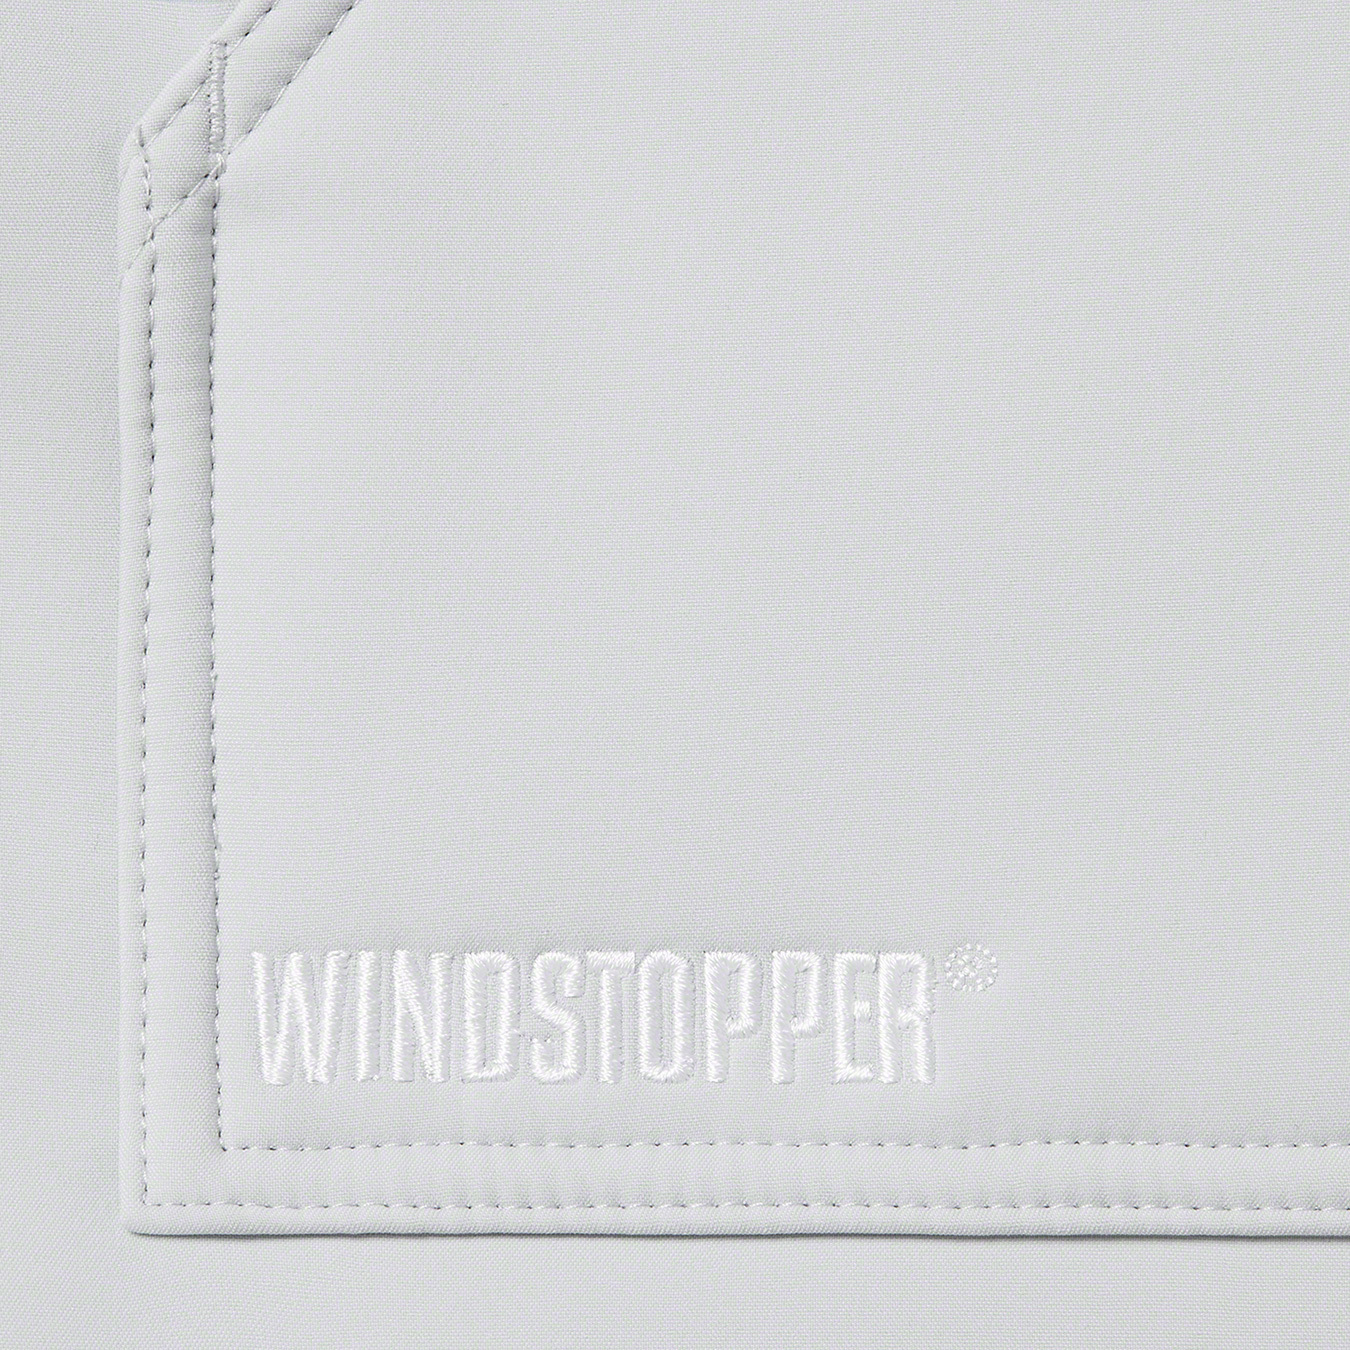 Supreme WINDSTOPPER® Work Vest